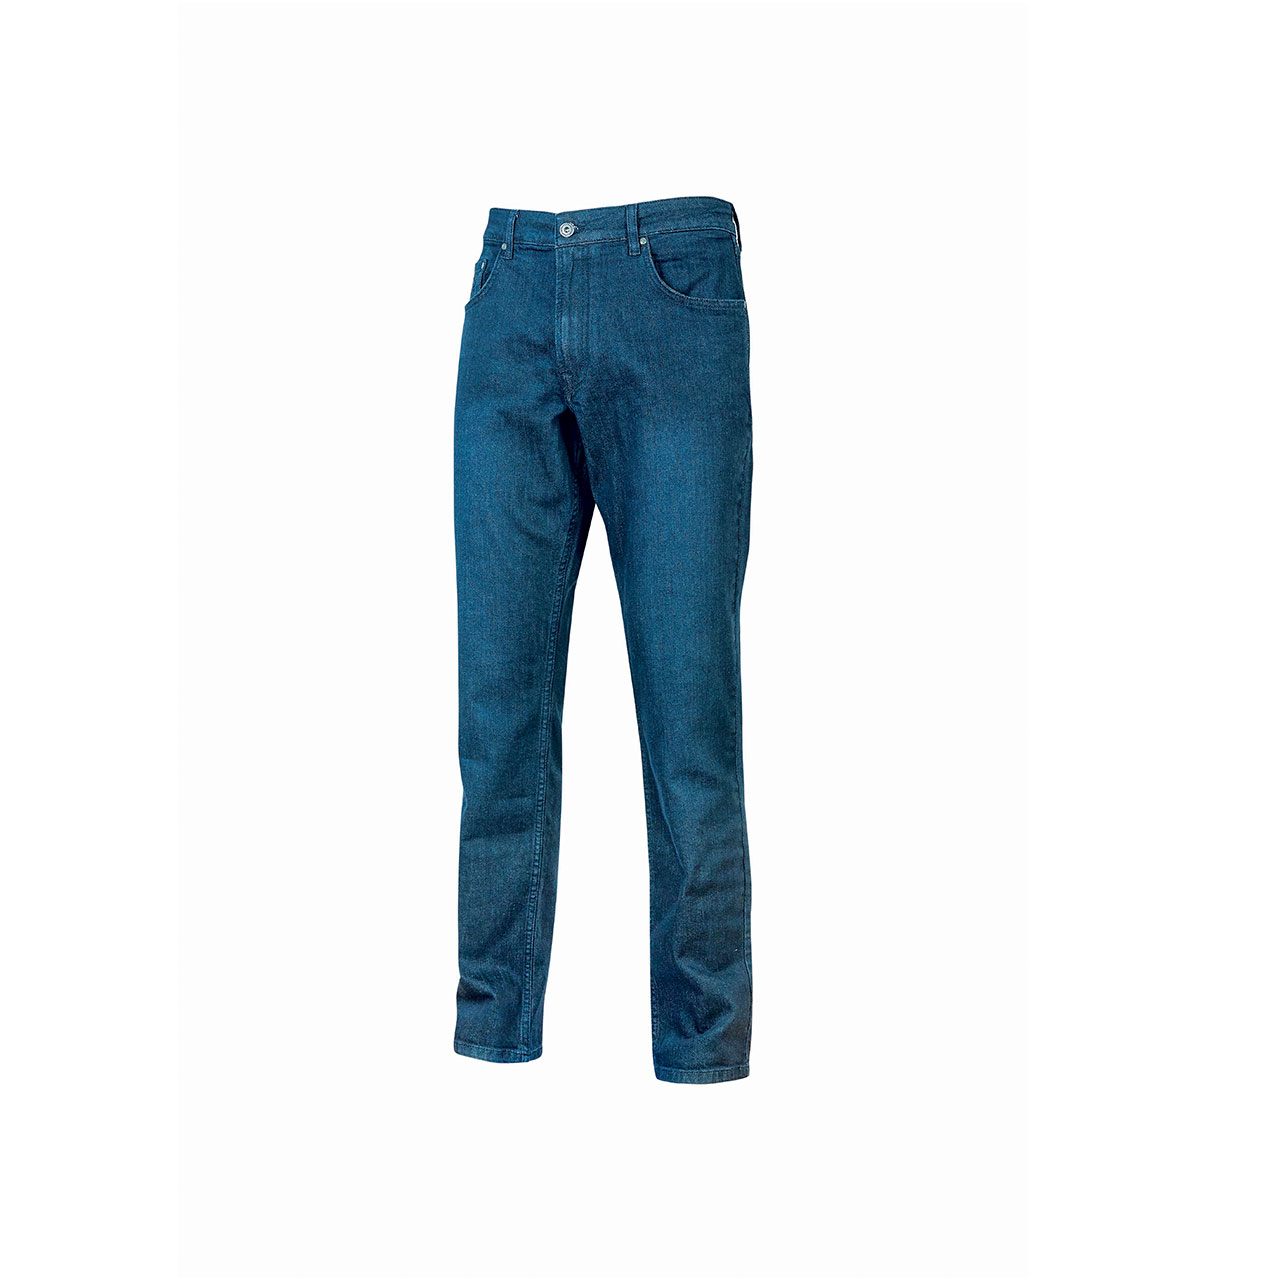 Pantaloni Jeans U-Power Romeo EX245, libert di movimento